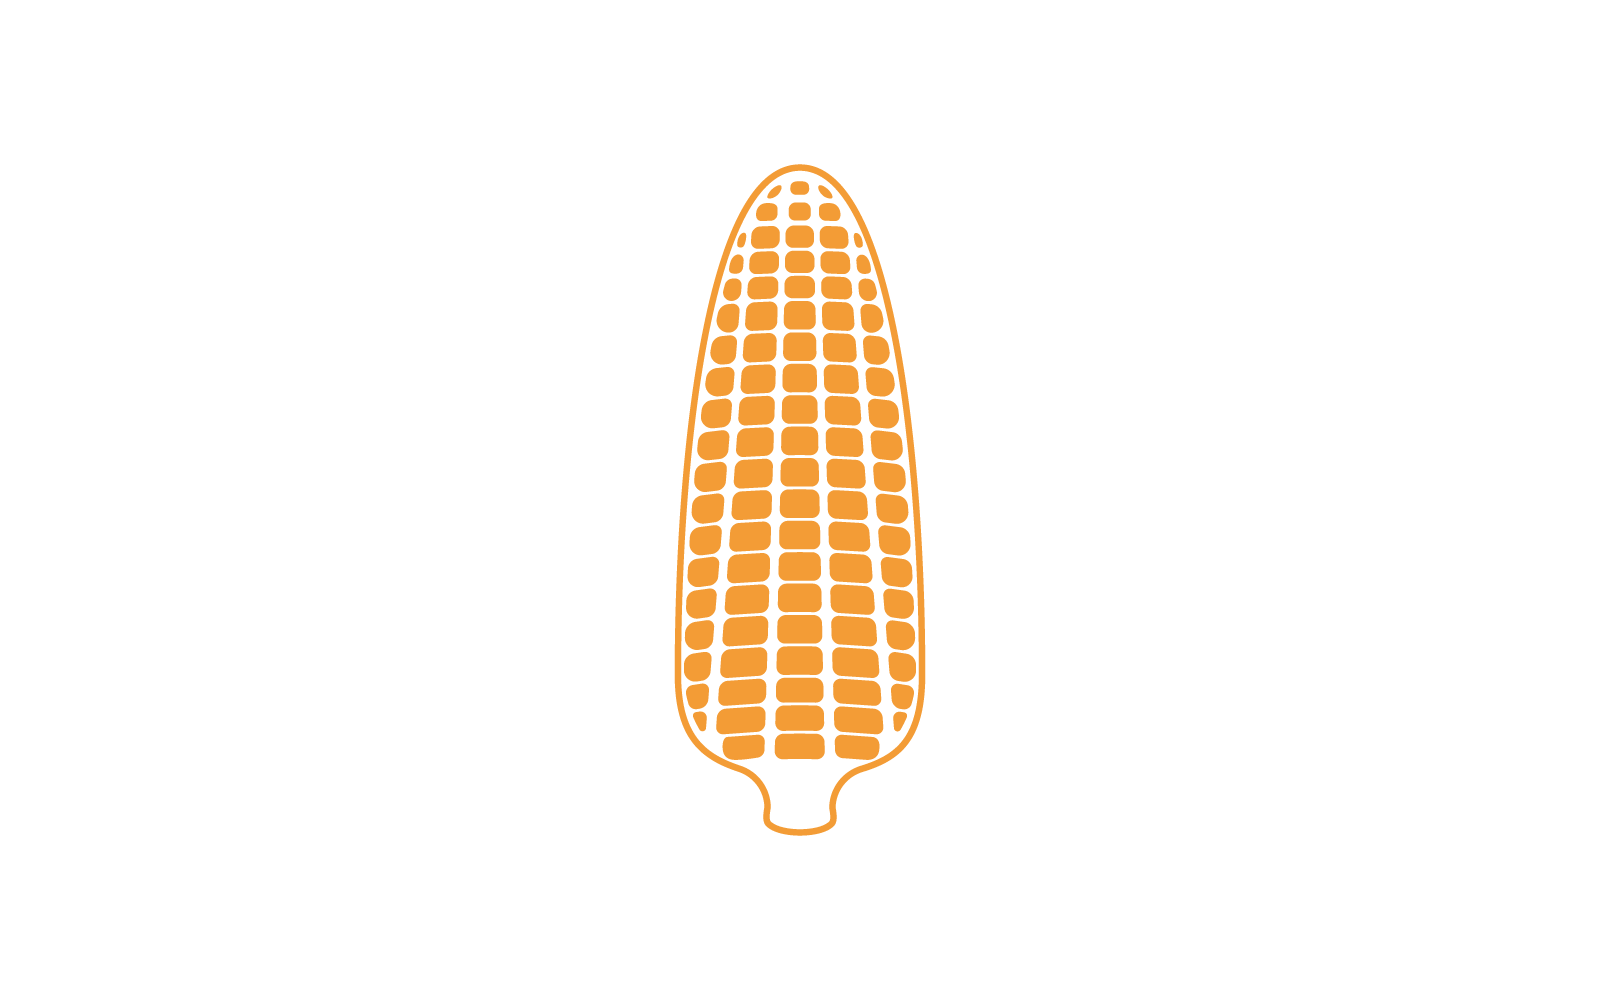 Corn logo illustration icon vector design template